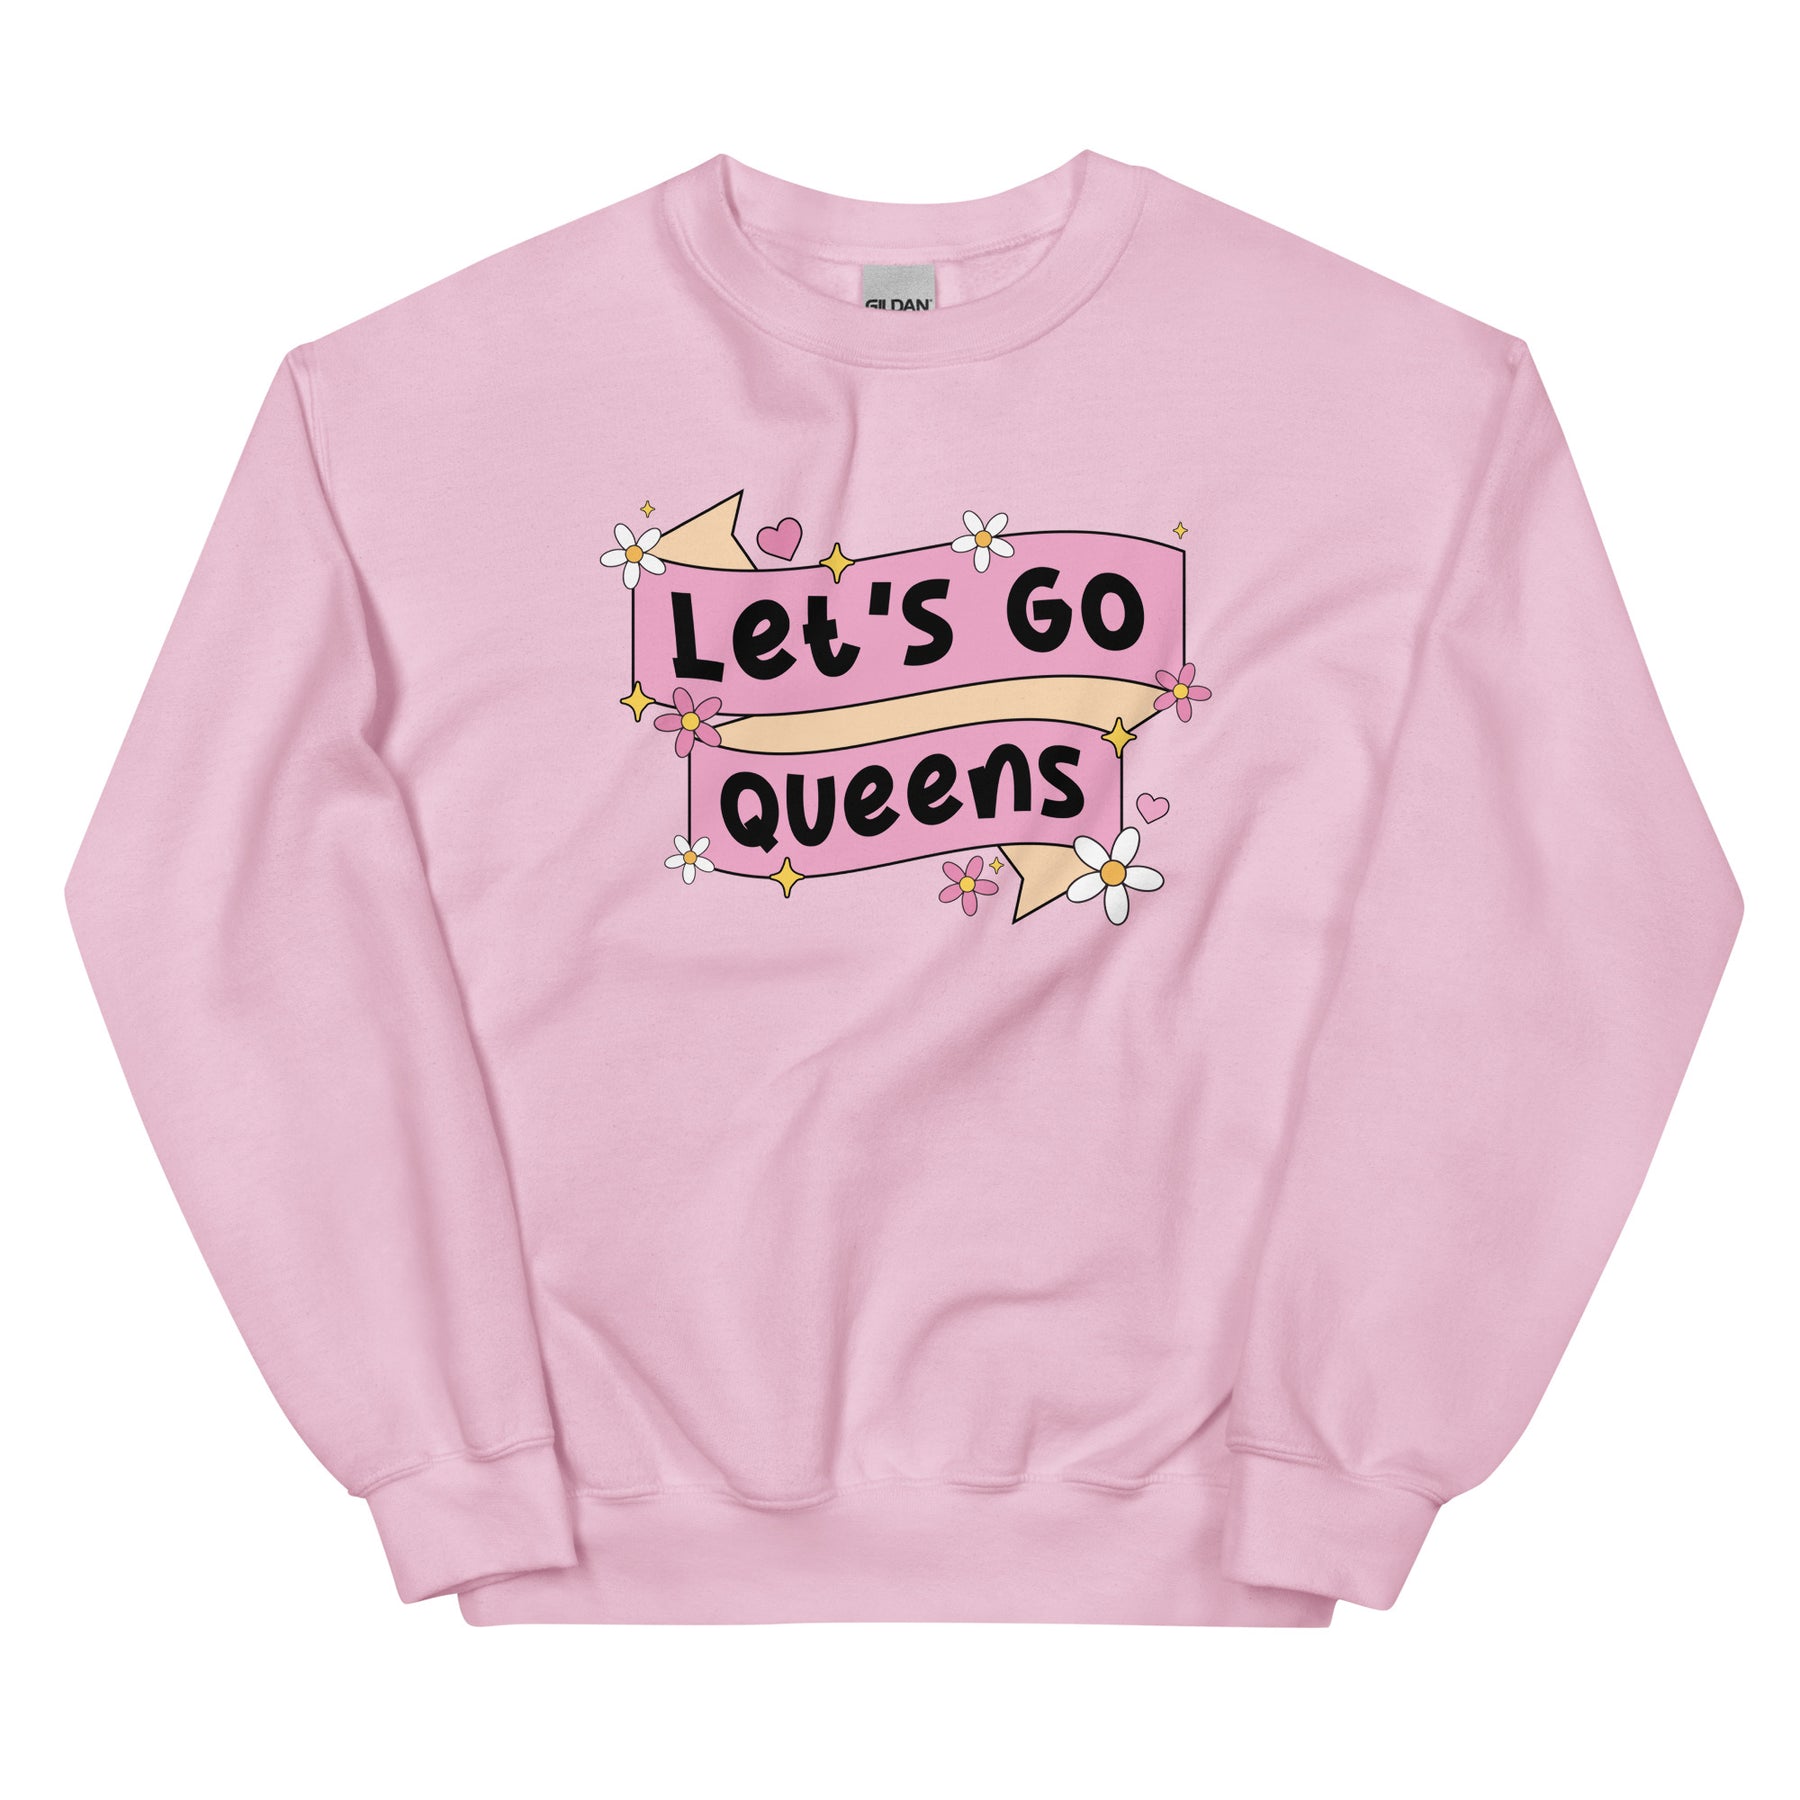 Let's Go Queens Sweatshirt